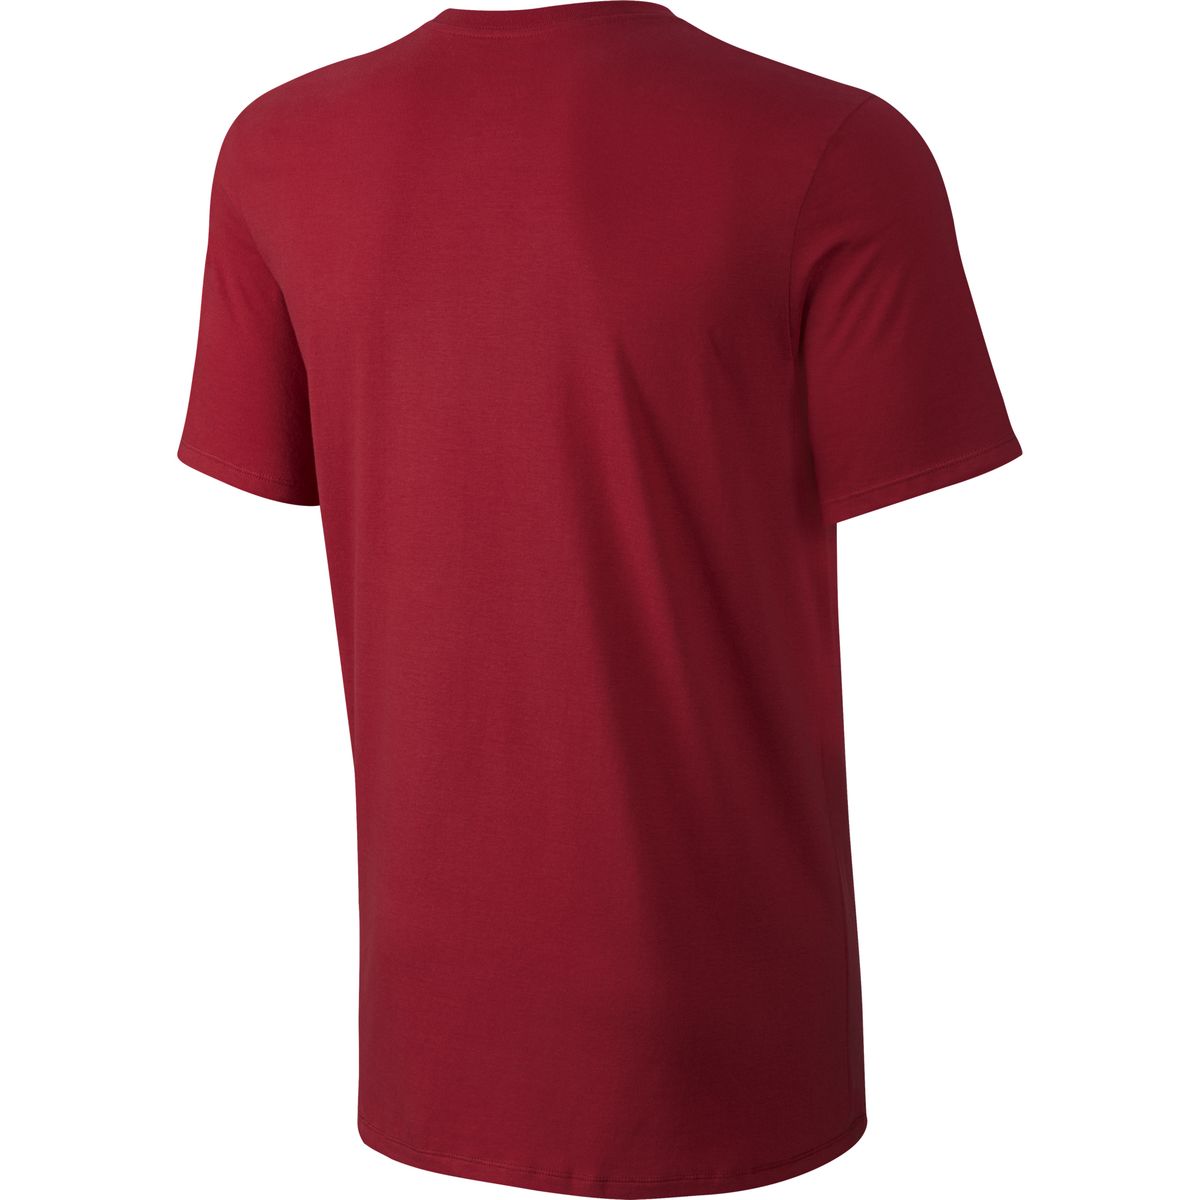 Genuino hidrógeno Medalla Nike SB GM 2 T-Shirt - Men's - Clothing